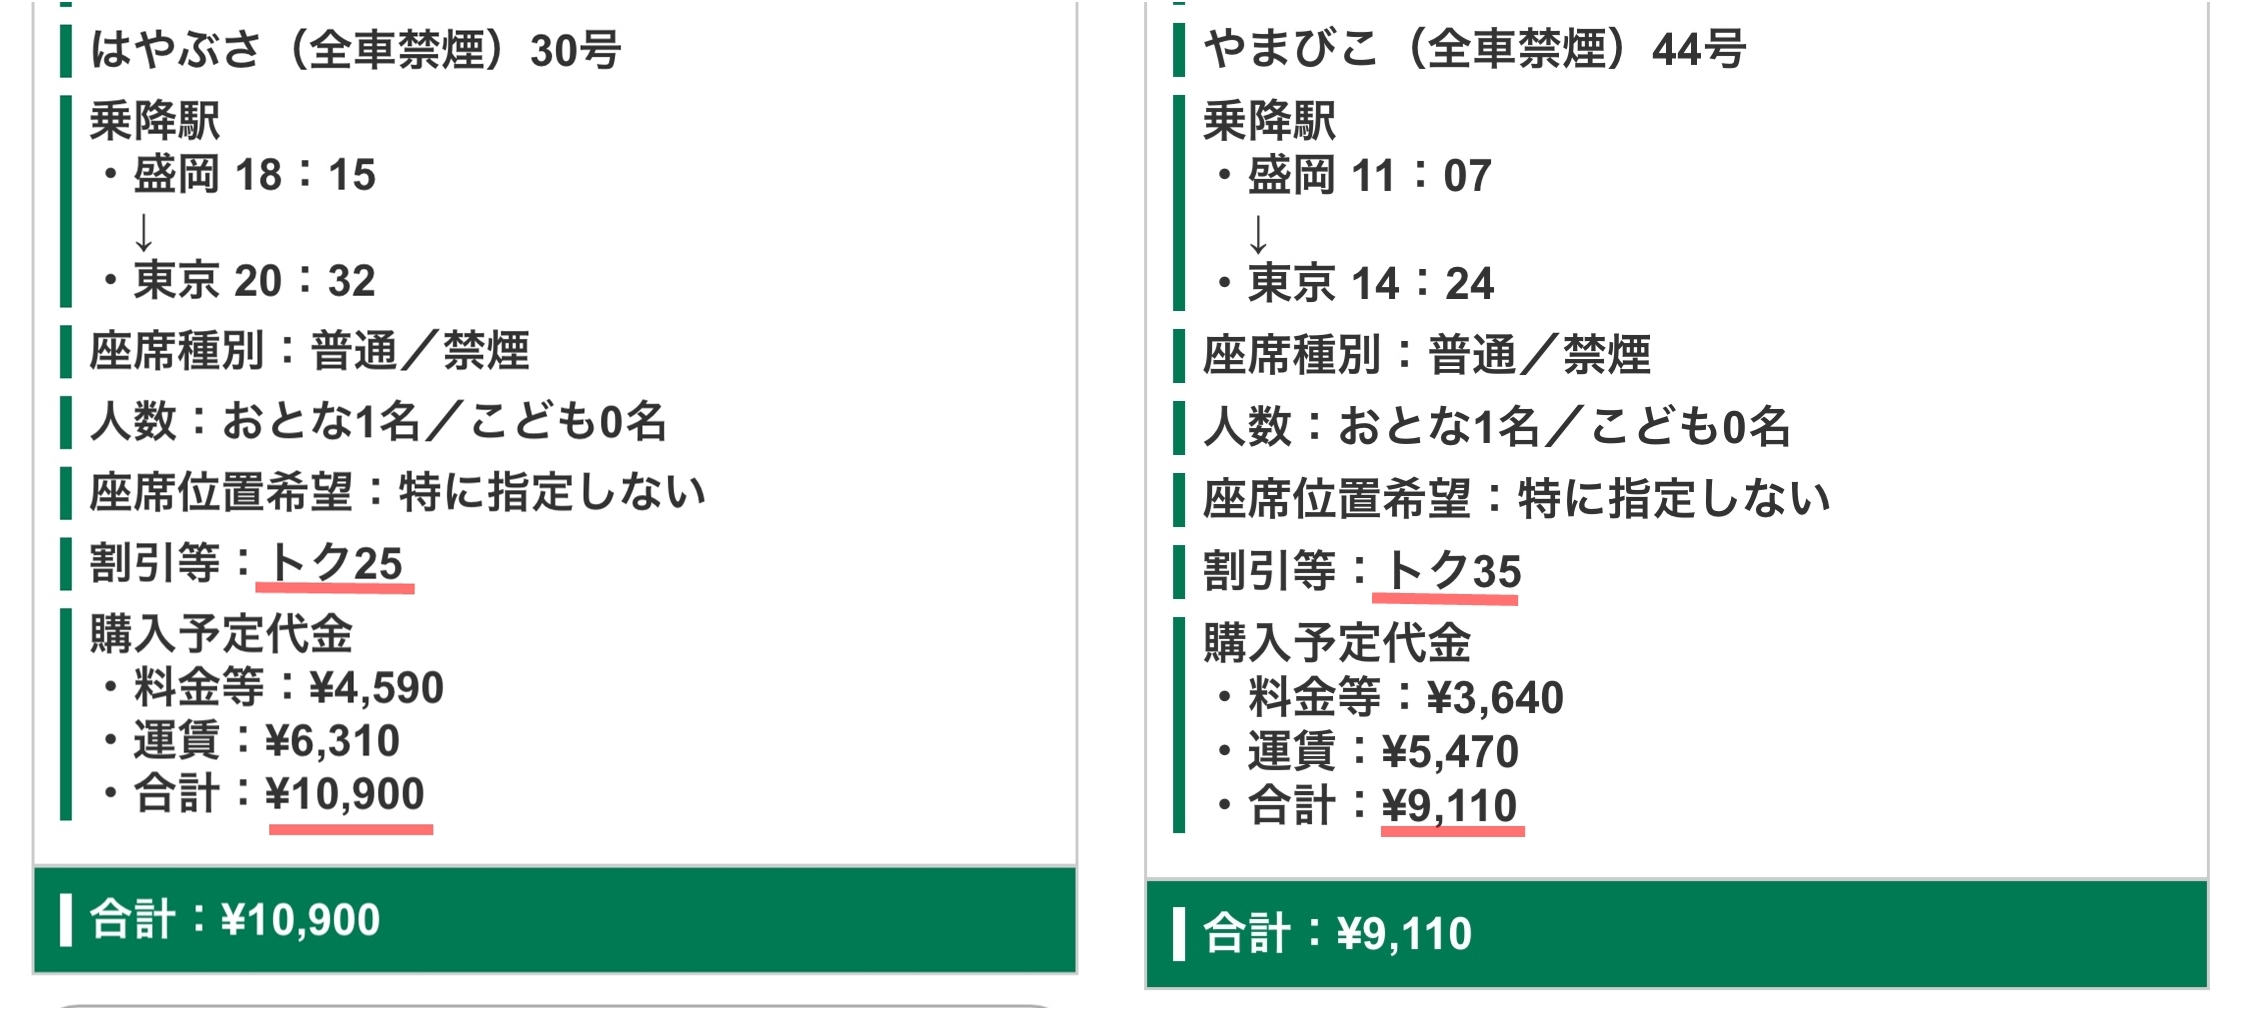 東北新幹線の割引料金